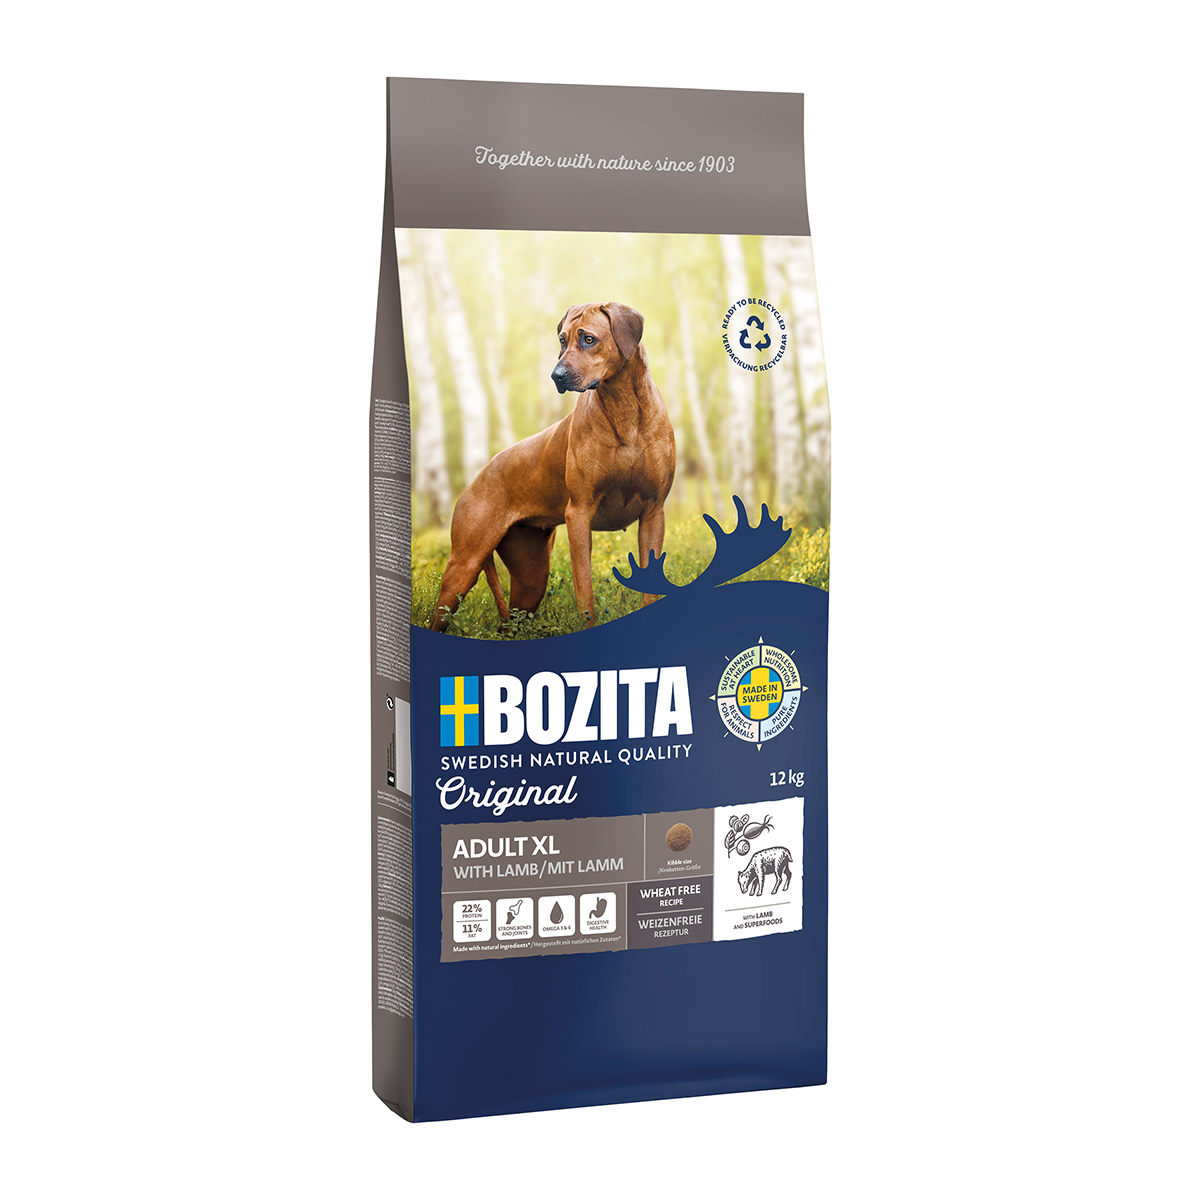 Bozita Original Adult XL 12kg von Bozita